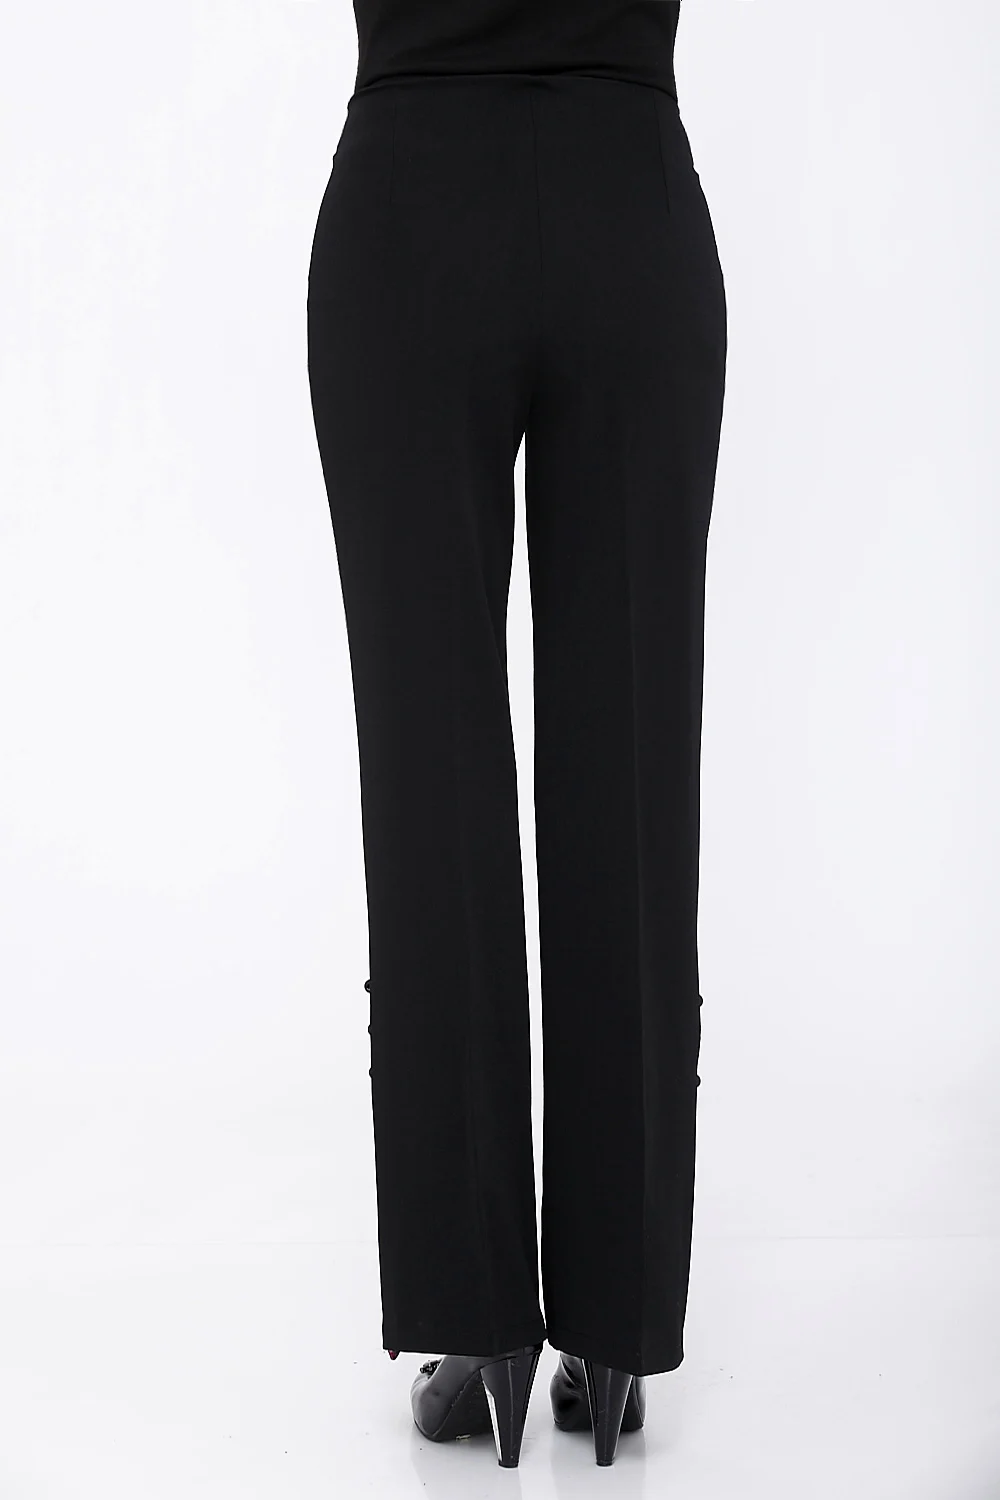 Расклешенные Брюки женские длинные с высокой талией расклешенные брюки с вышивкой черные офисные брюки 5XL узкие расклешенные брюки для танцев узкие брюки A2